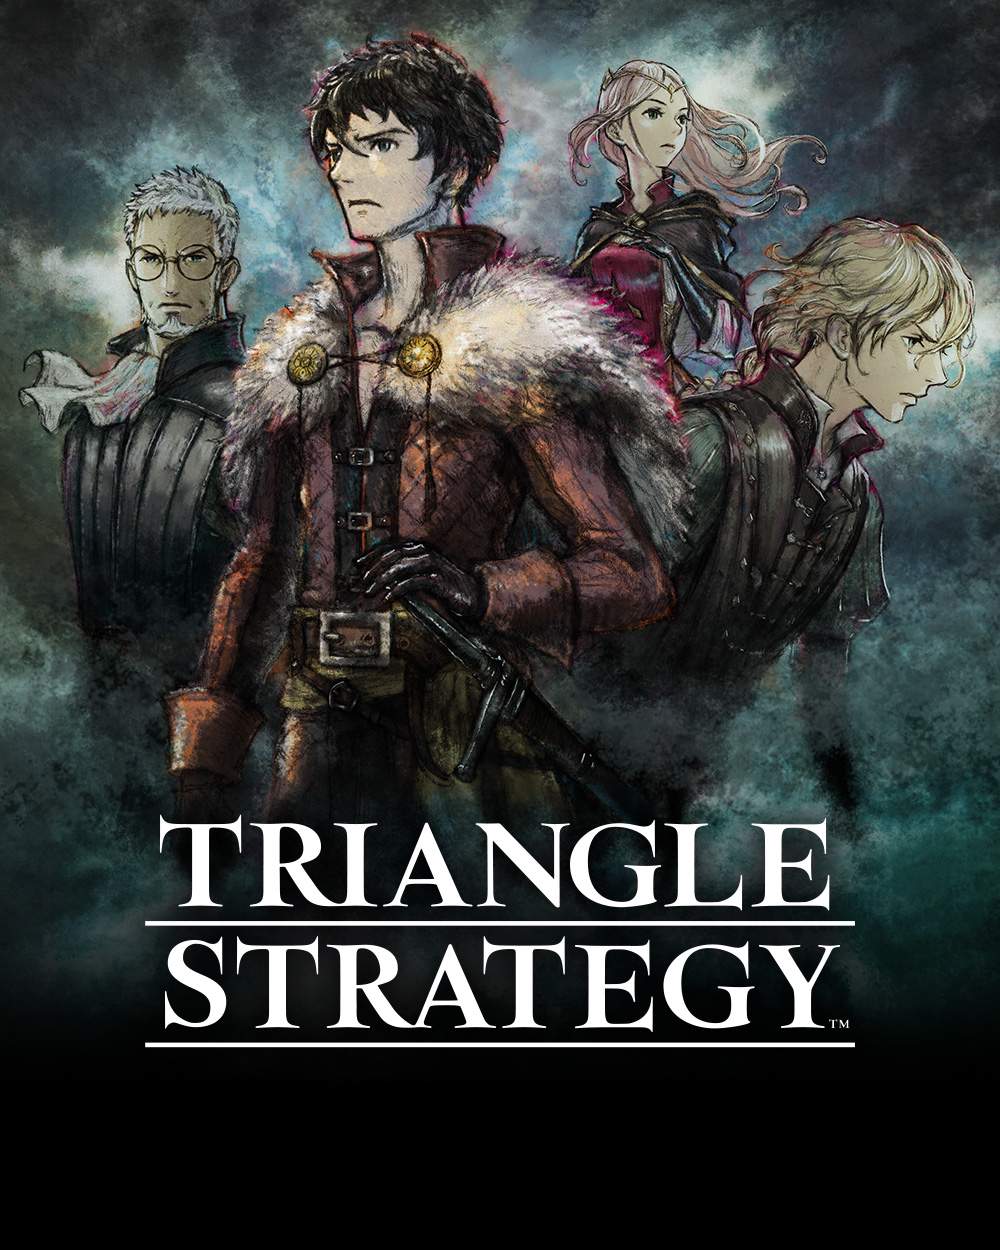 TRIANGLE STRATEGY-Illustration mit den vier Protagonisten und dem Spiellogo.